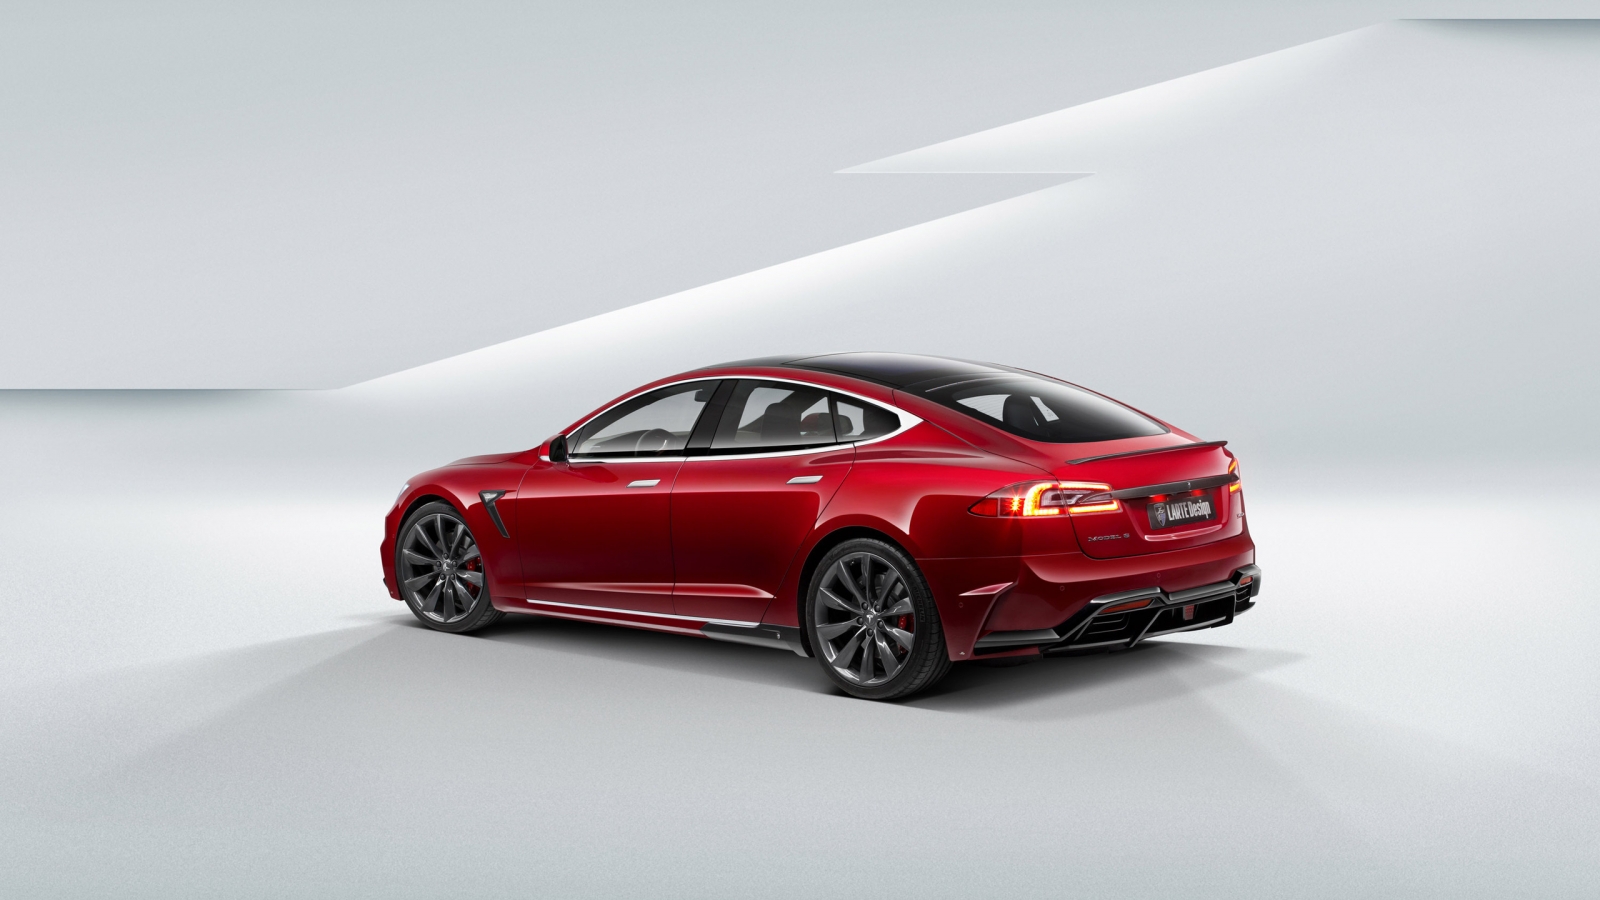 Tesla Model S 2015 for 1600 x 900 HDTV resolution